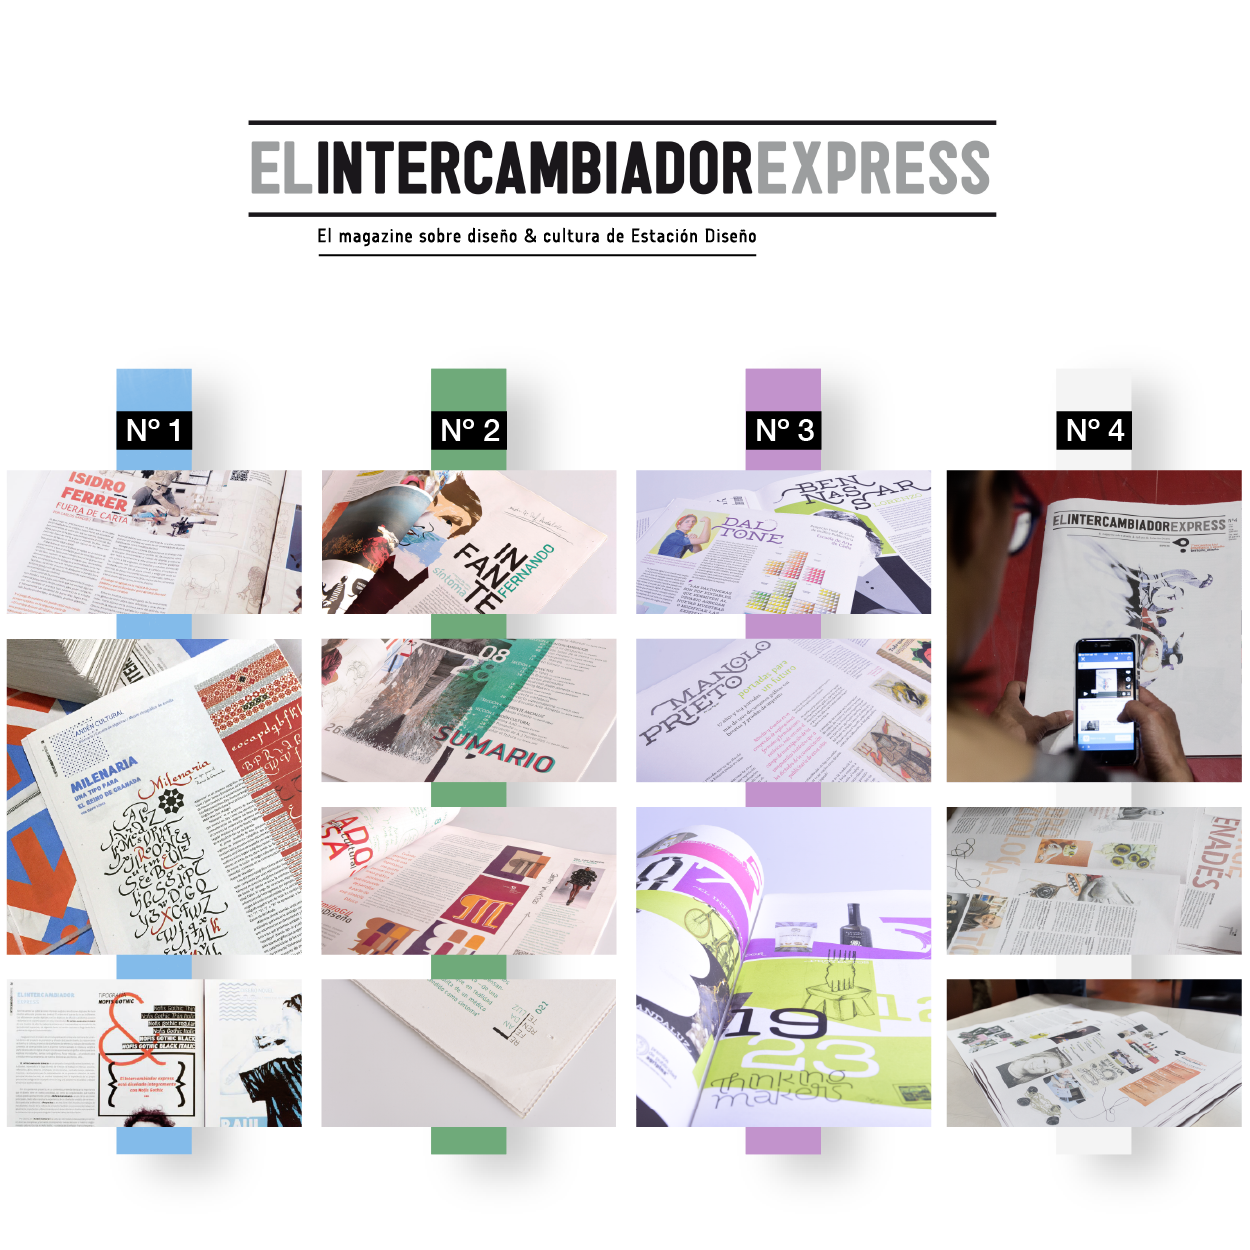 El Intercambiador Express. El magazine sobre diseño y cultura de Estación Diseño by Varios autores - Creative Work - $i